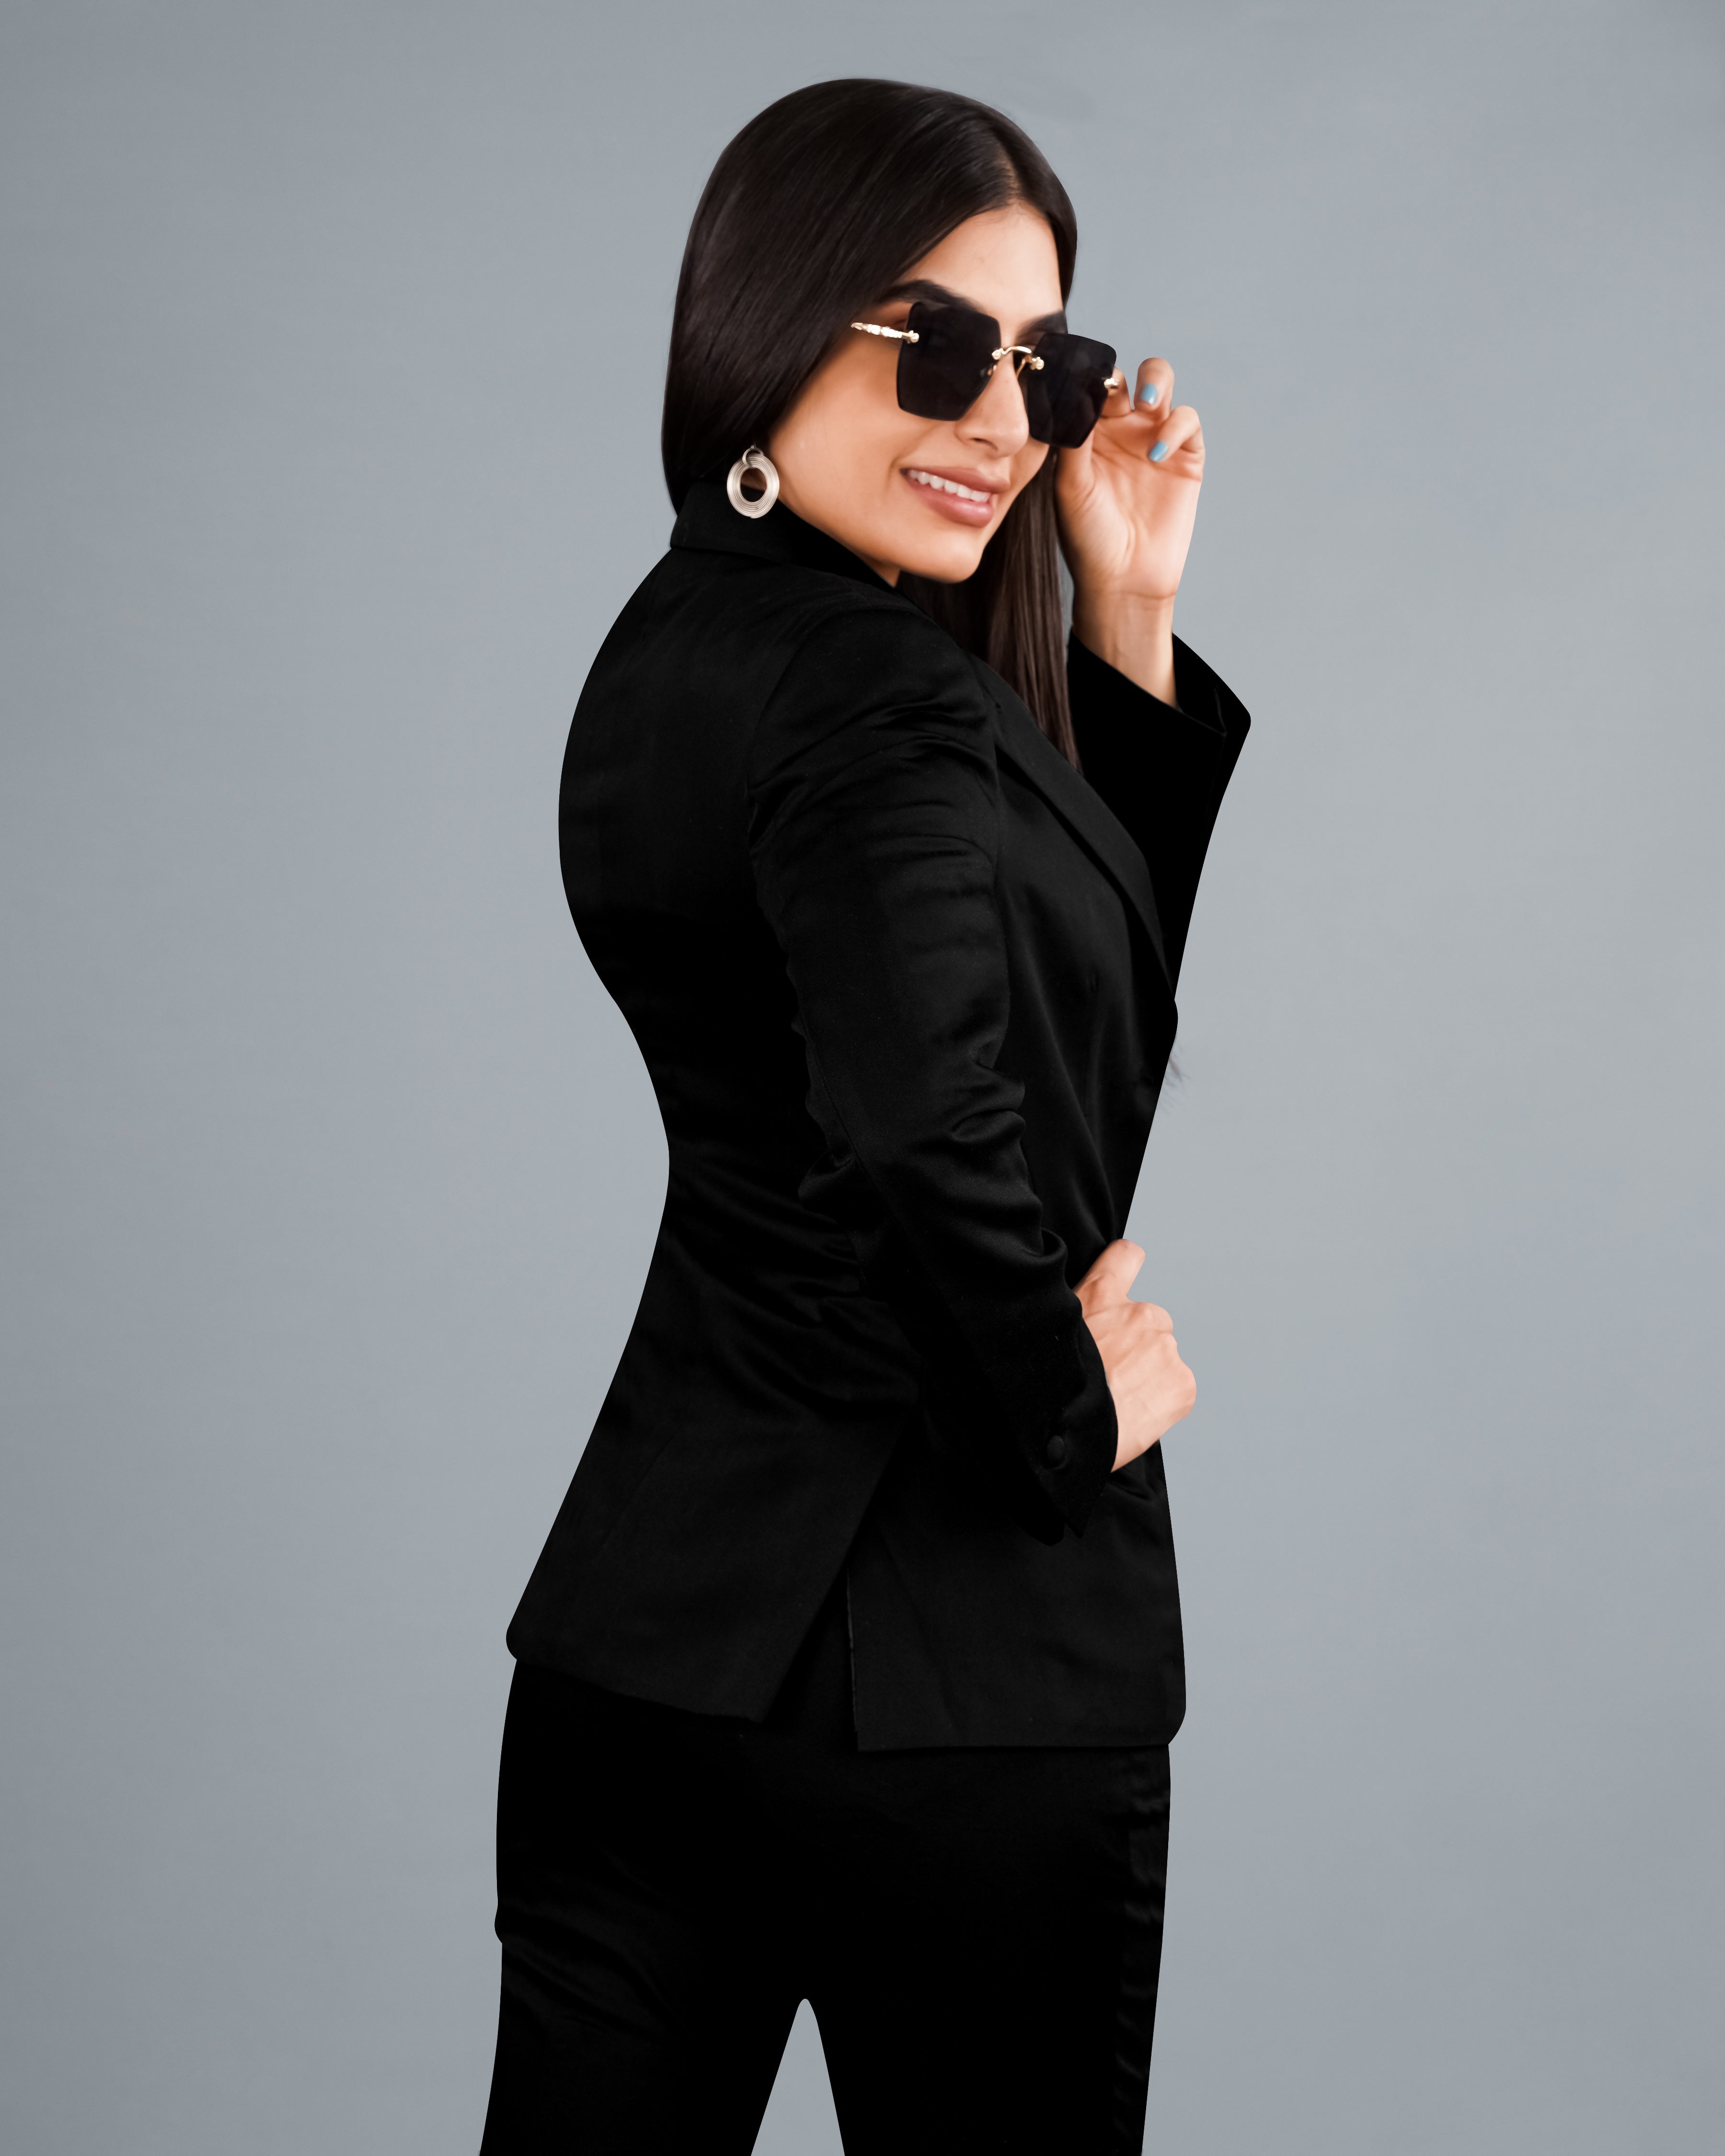 Jade Black Premium Cotton Women's Suit WST001-SB-FB-32, WST001-SB-FB-34, WST001-SB-FB-36, WST001-SB-FB-38, WST001-SB-FB-40, WST001-SB-FB-42